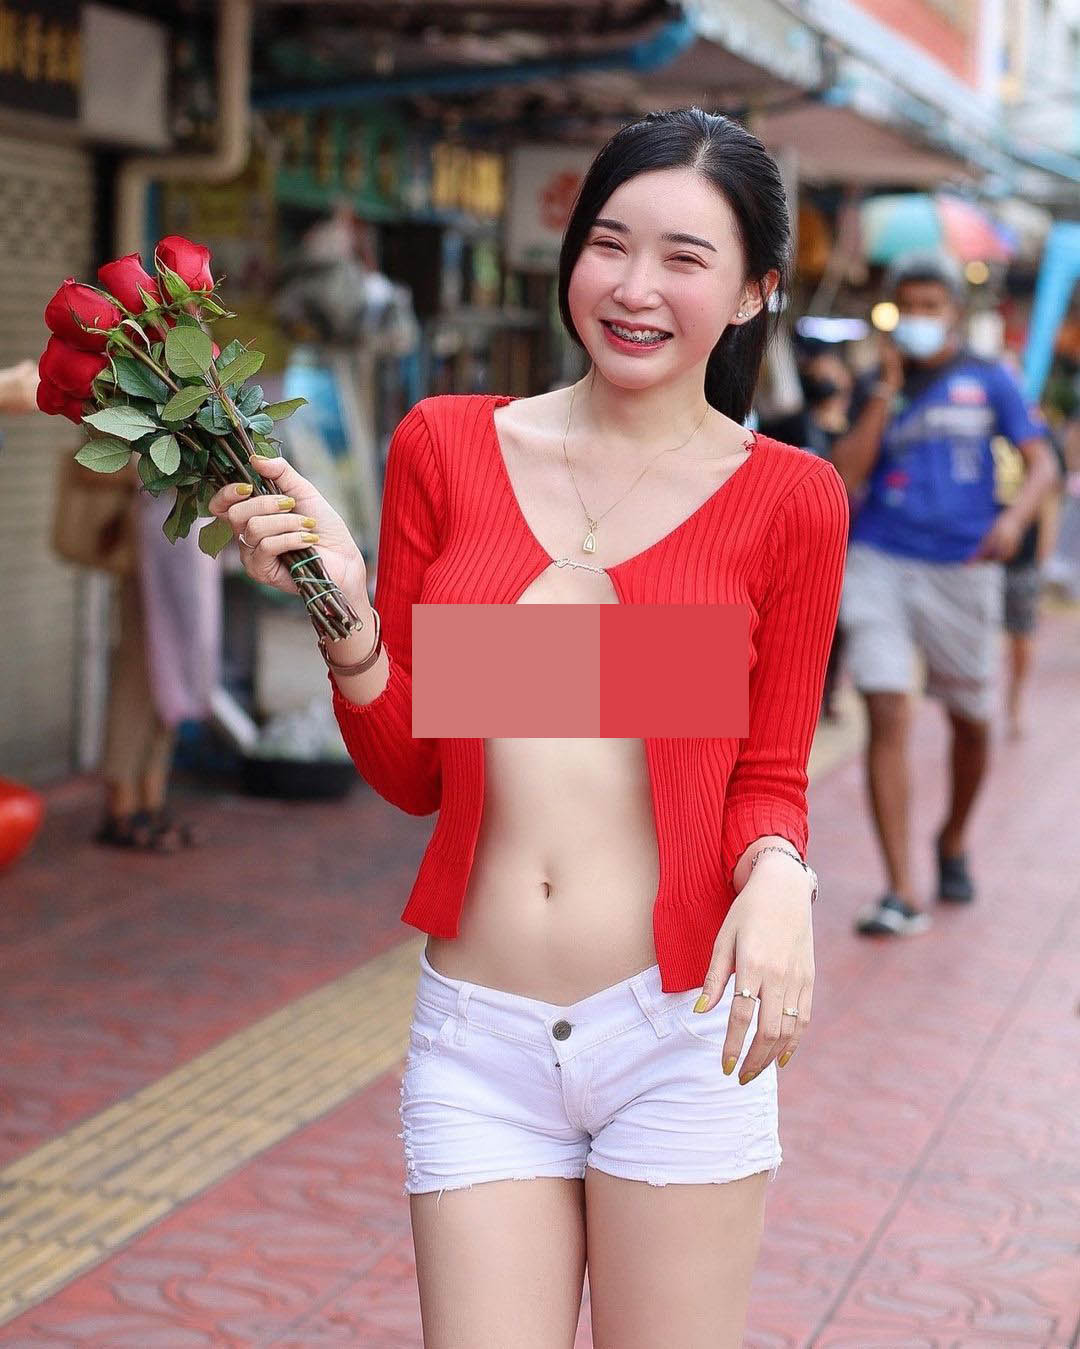 Qanan Kanokyada là người đẹp Thái Lan có lượng người theo dõi không nhỏ trên mạng xã hội.&nbsp;